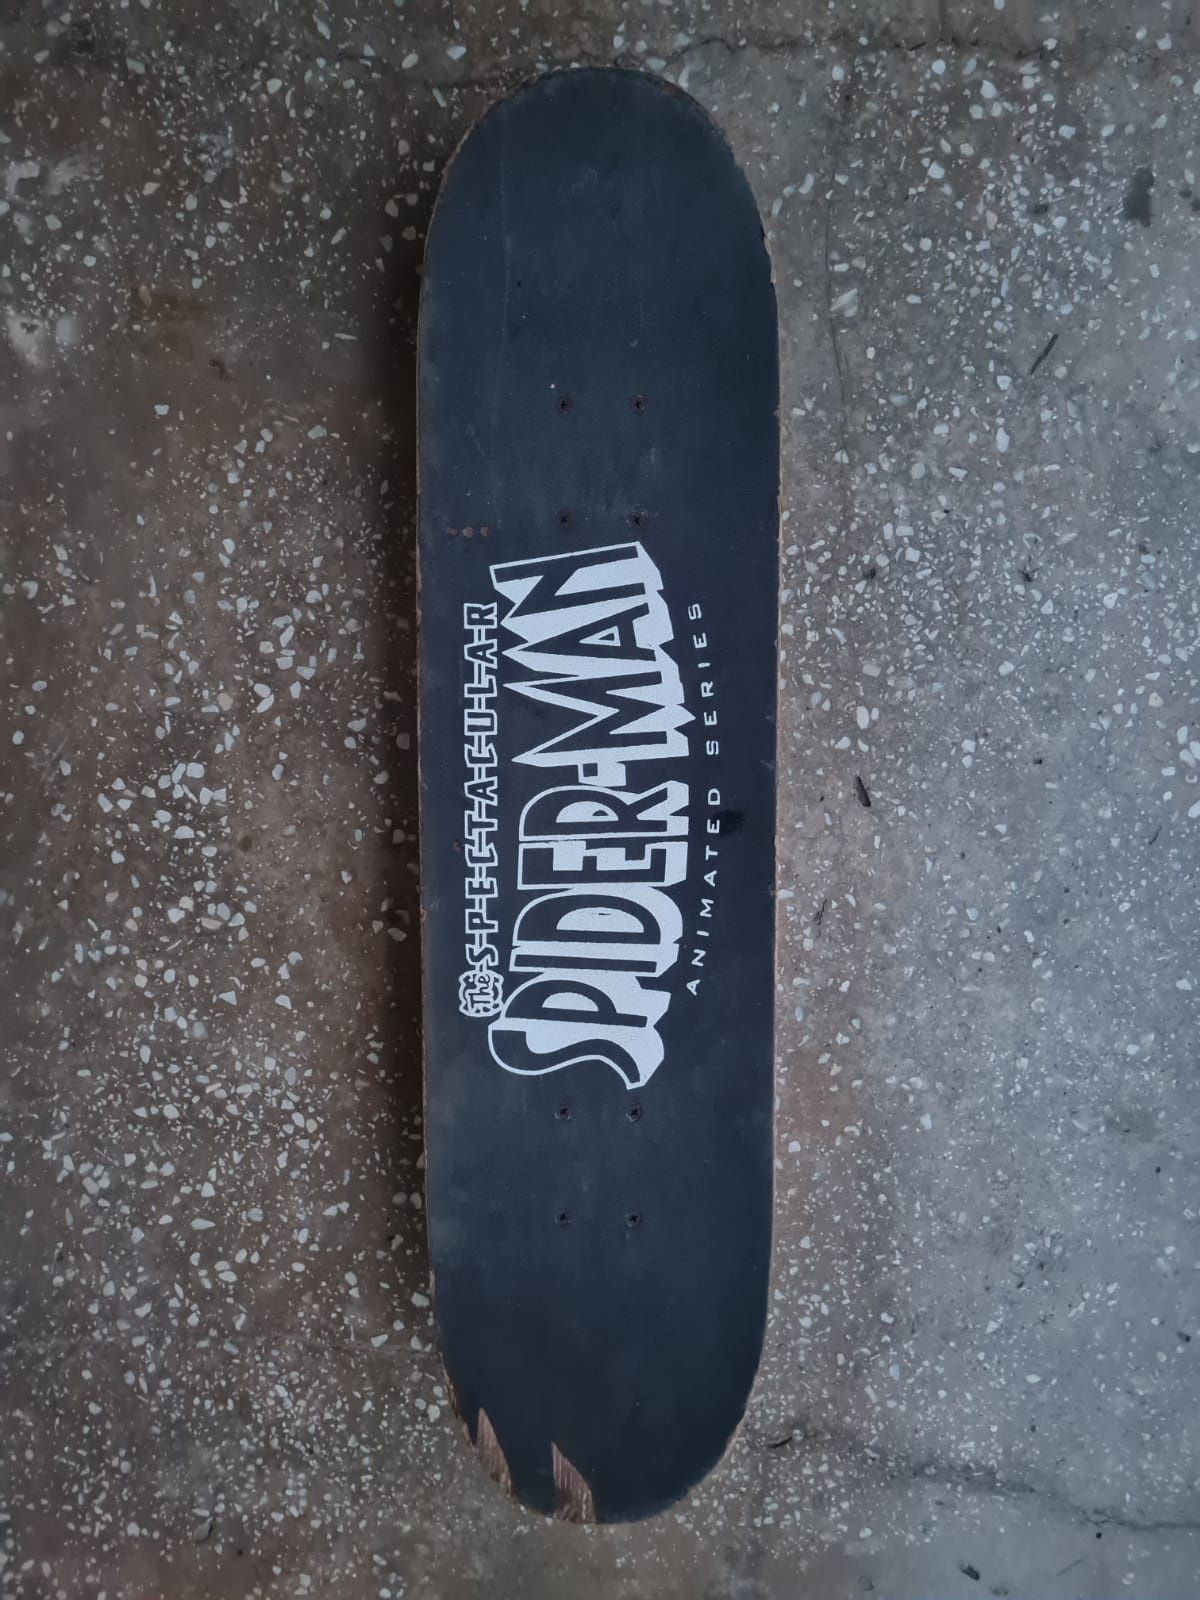 Vand pennyboard, skateboard, role